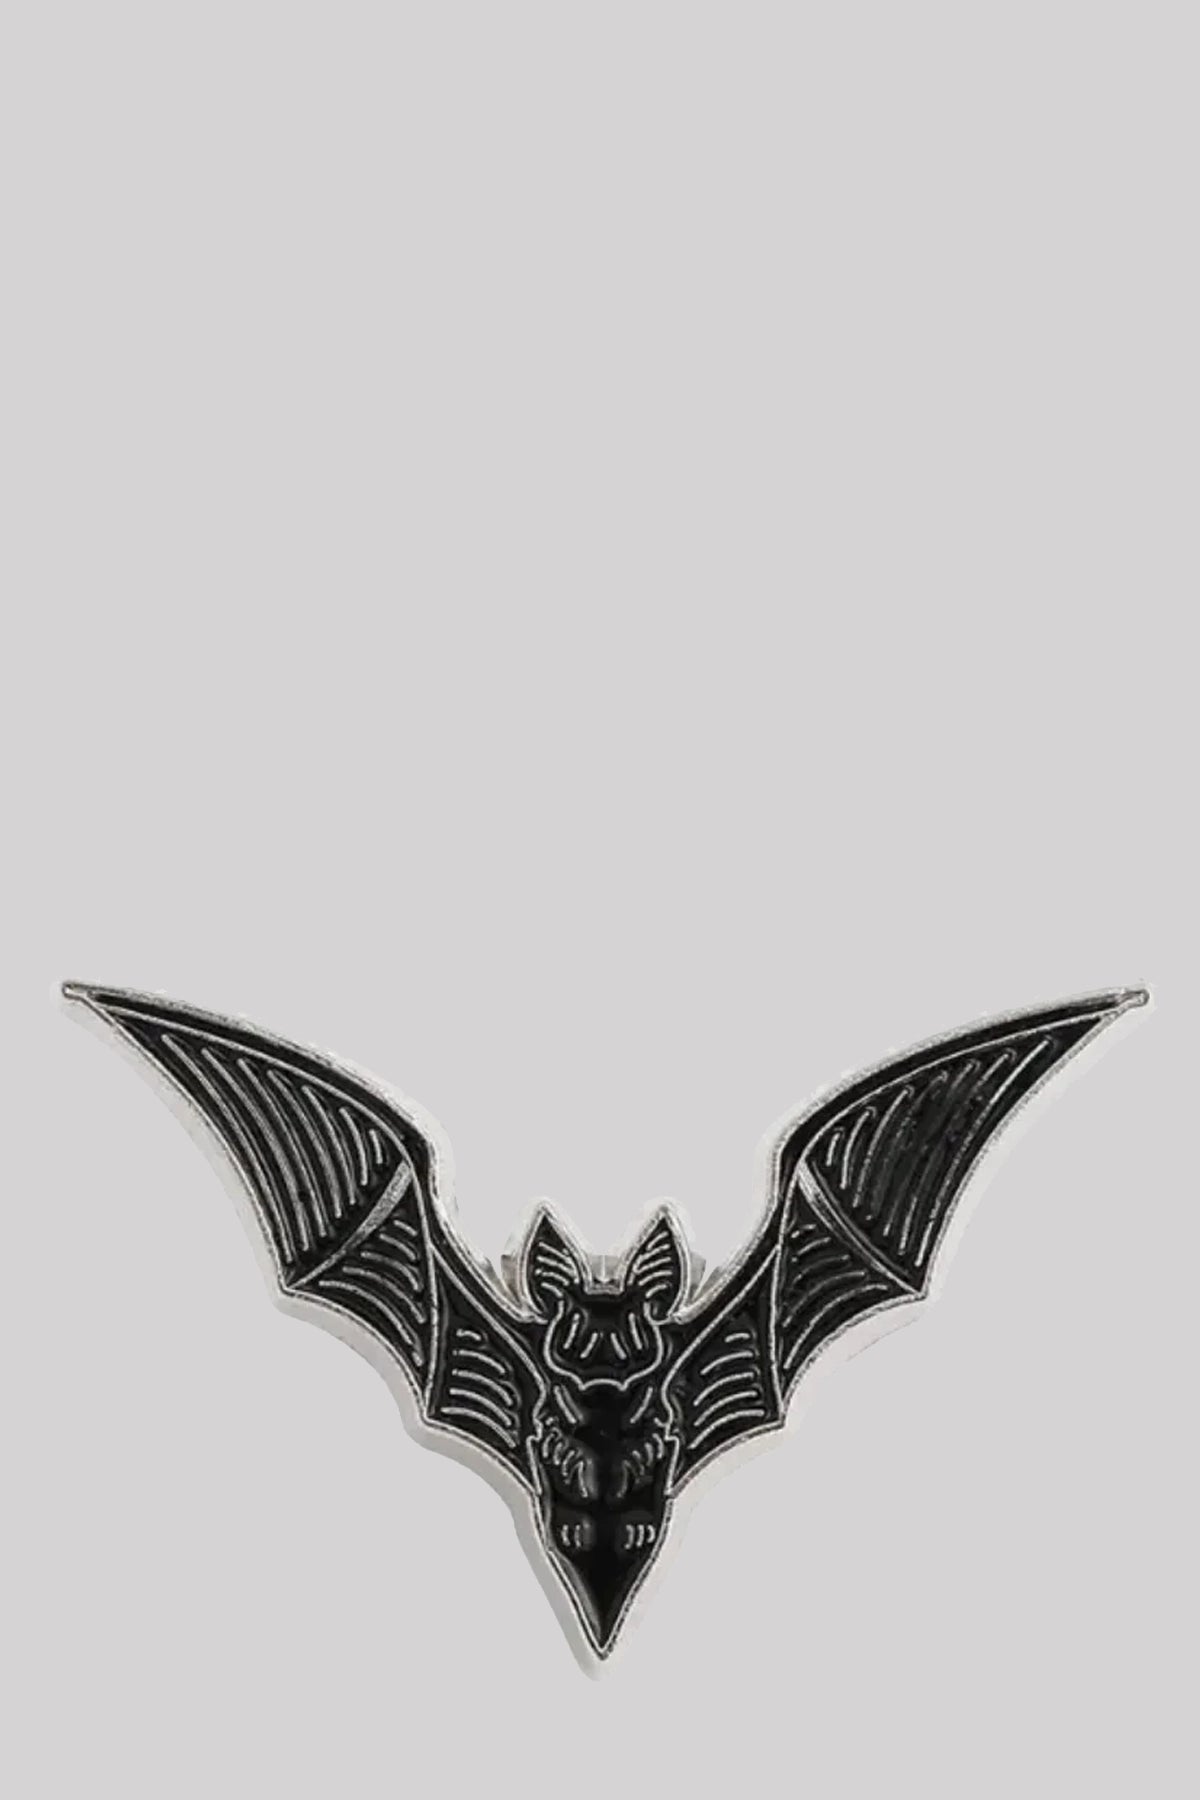 Ro Rox Bat Character Pin Brooch Gothic Badge